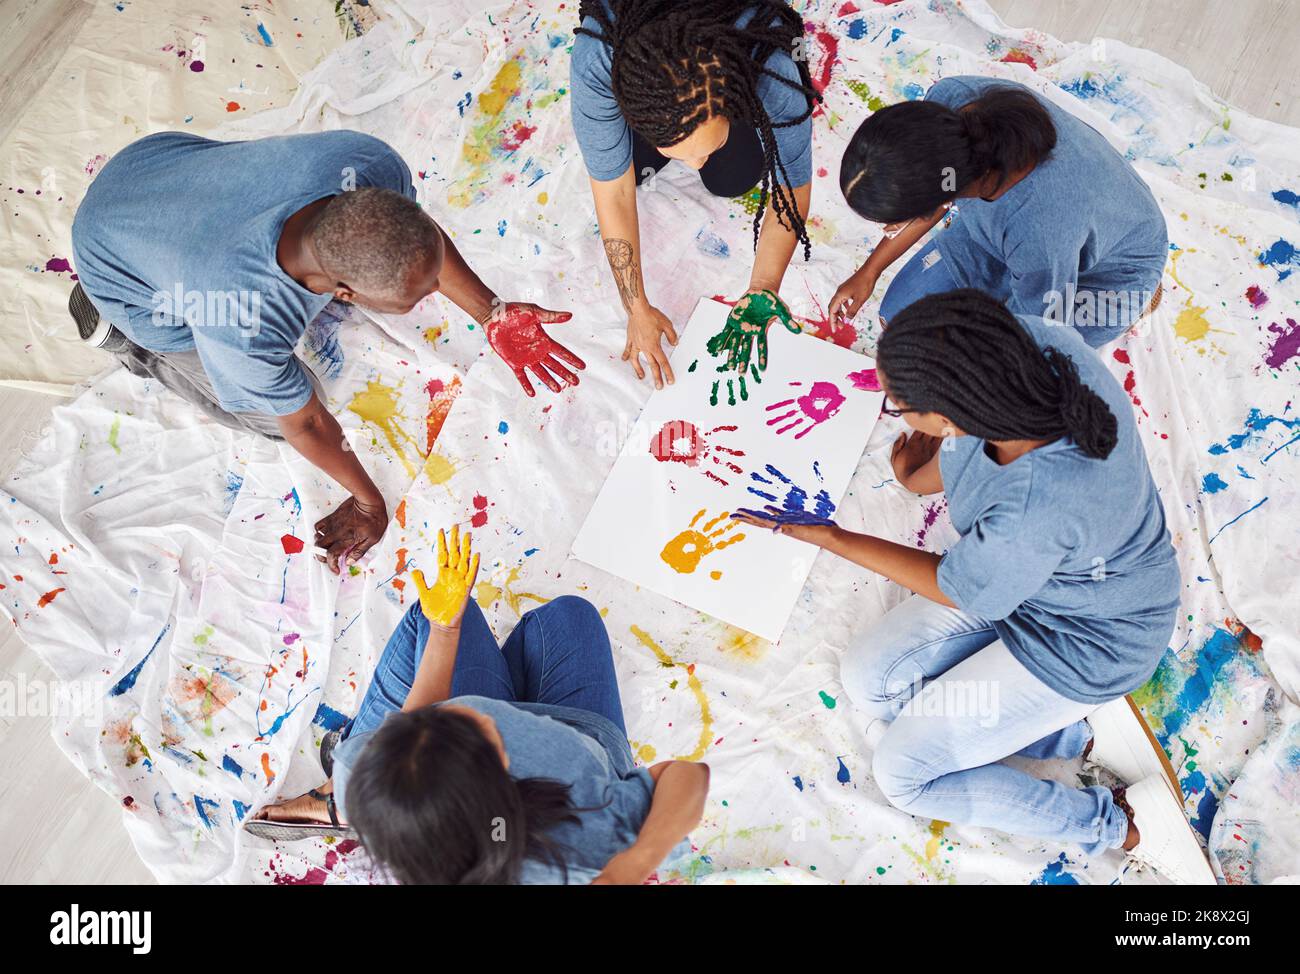 Werden Sie gemeinsam kreativ. Eine Gruppe von Menschen, die bemalte Handdrucke auf einem weißen Poster hinterlassen. Stockfoto